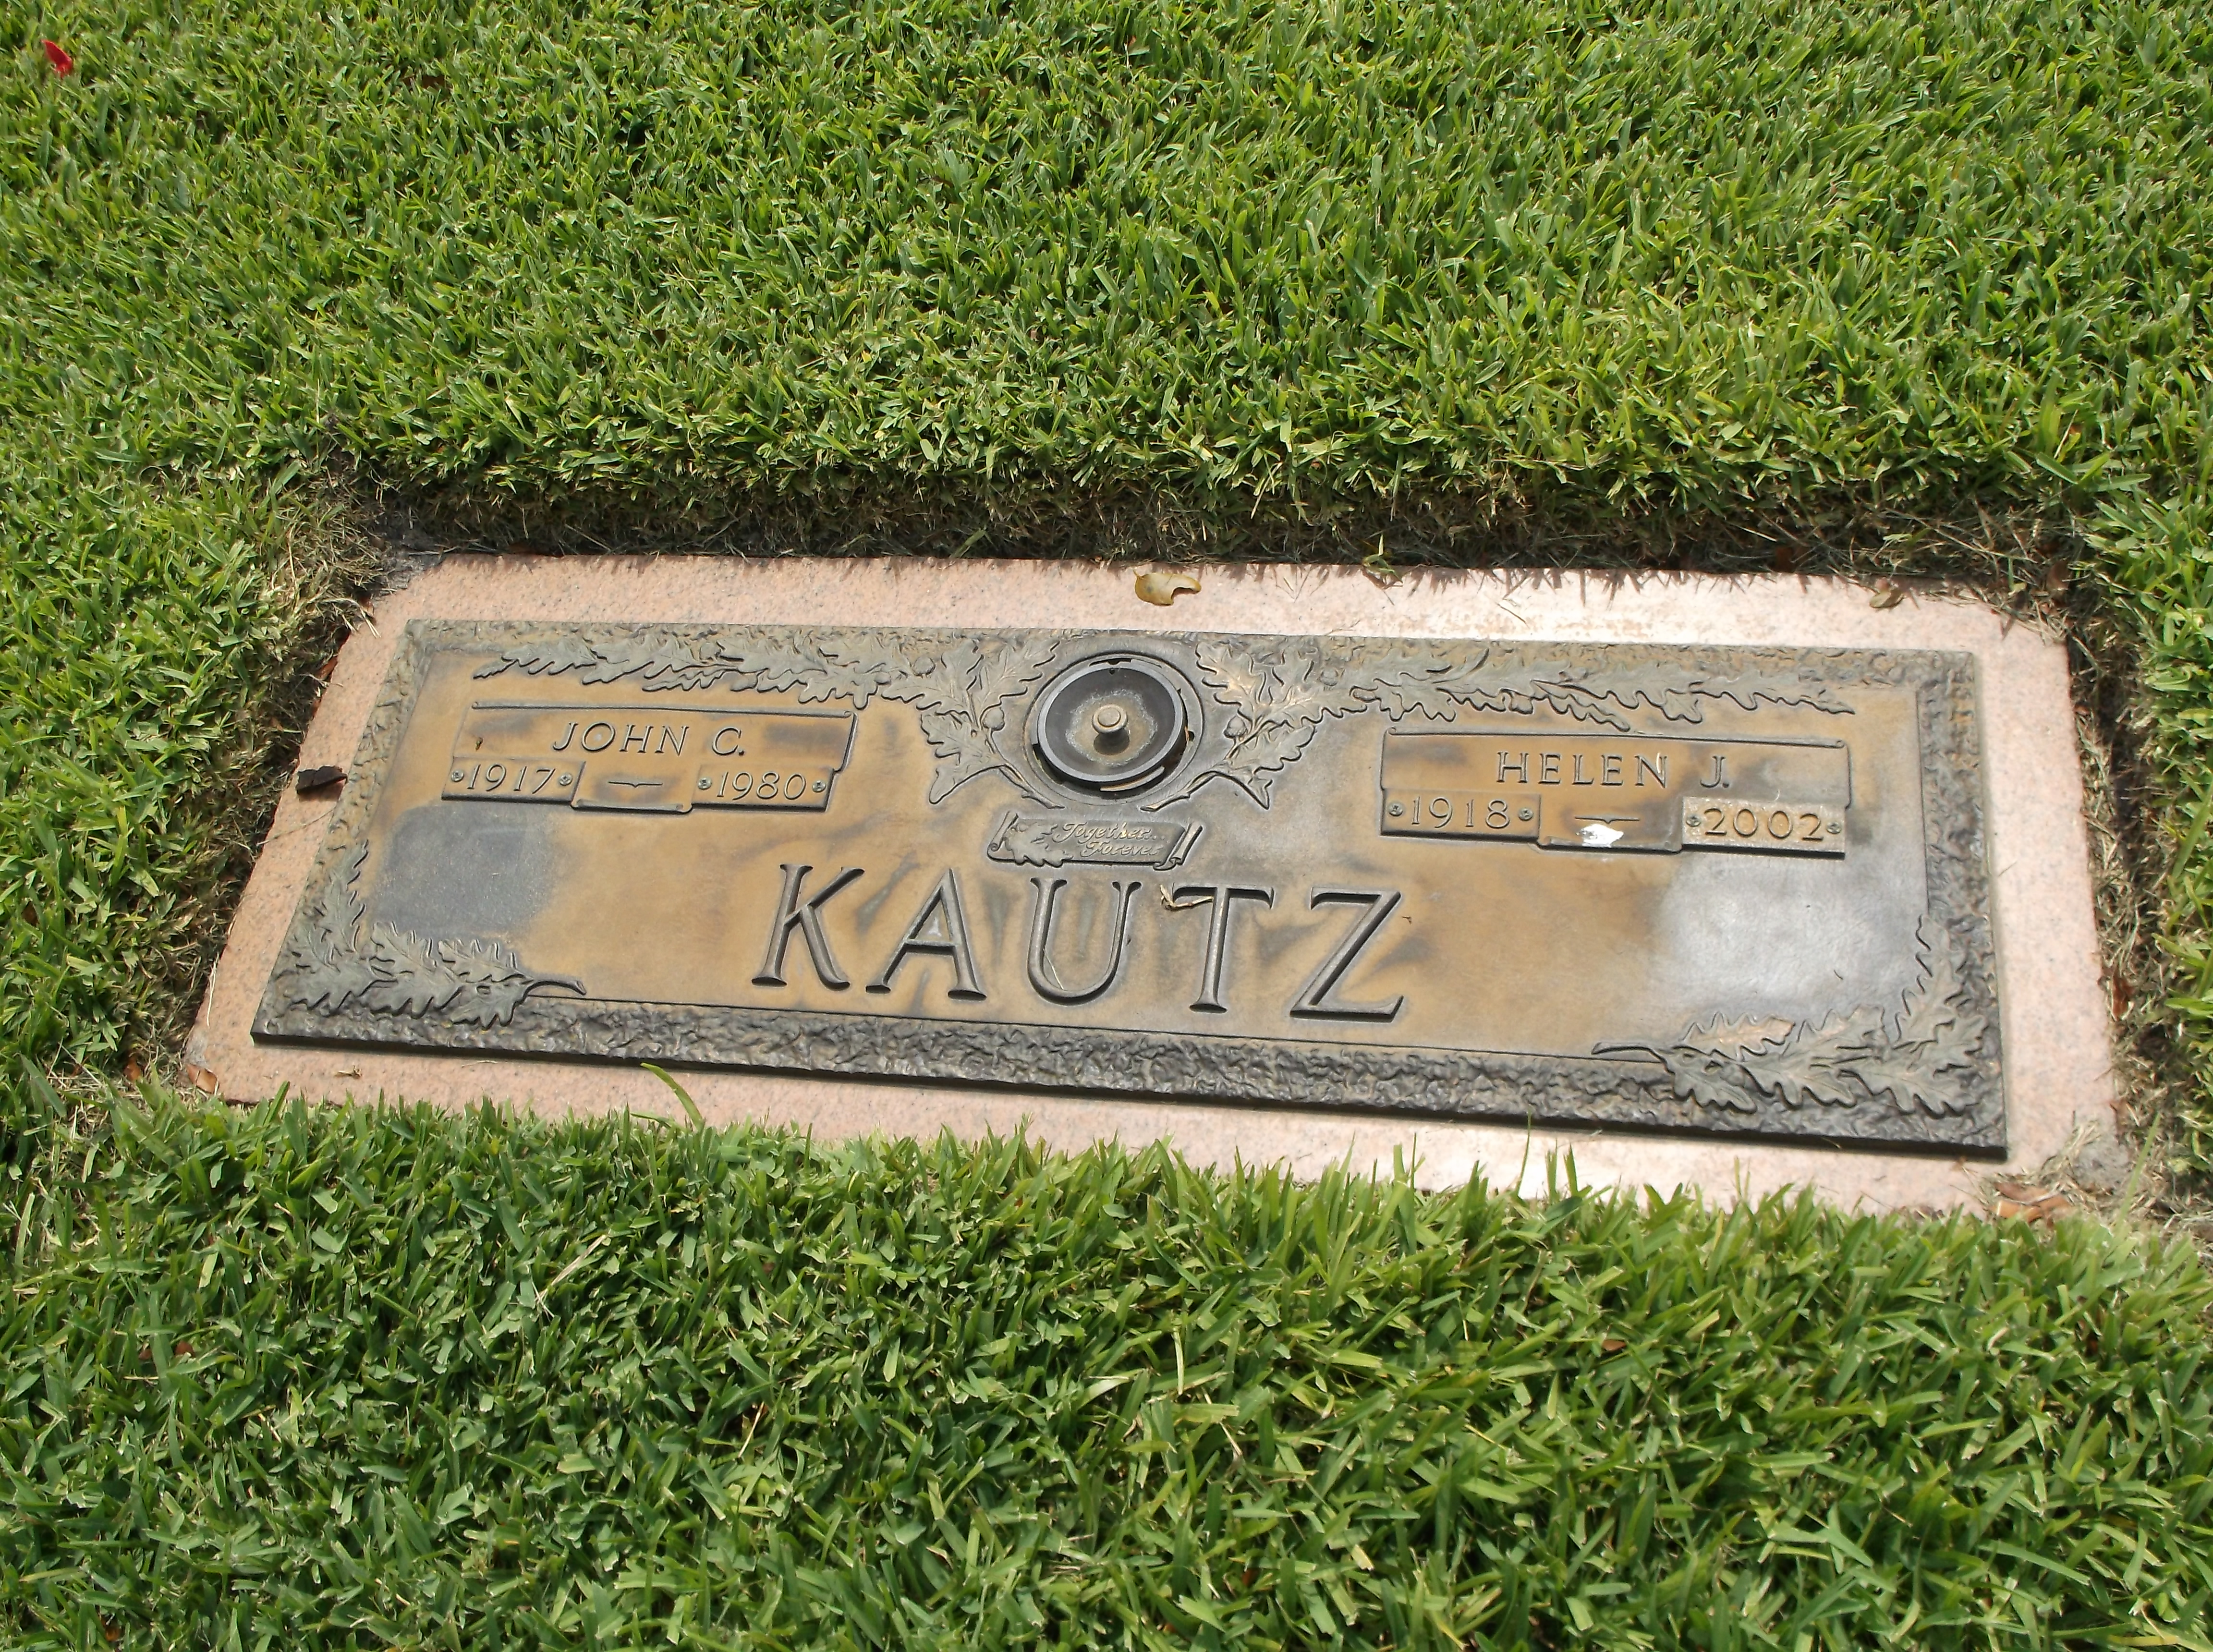 John C Kautz